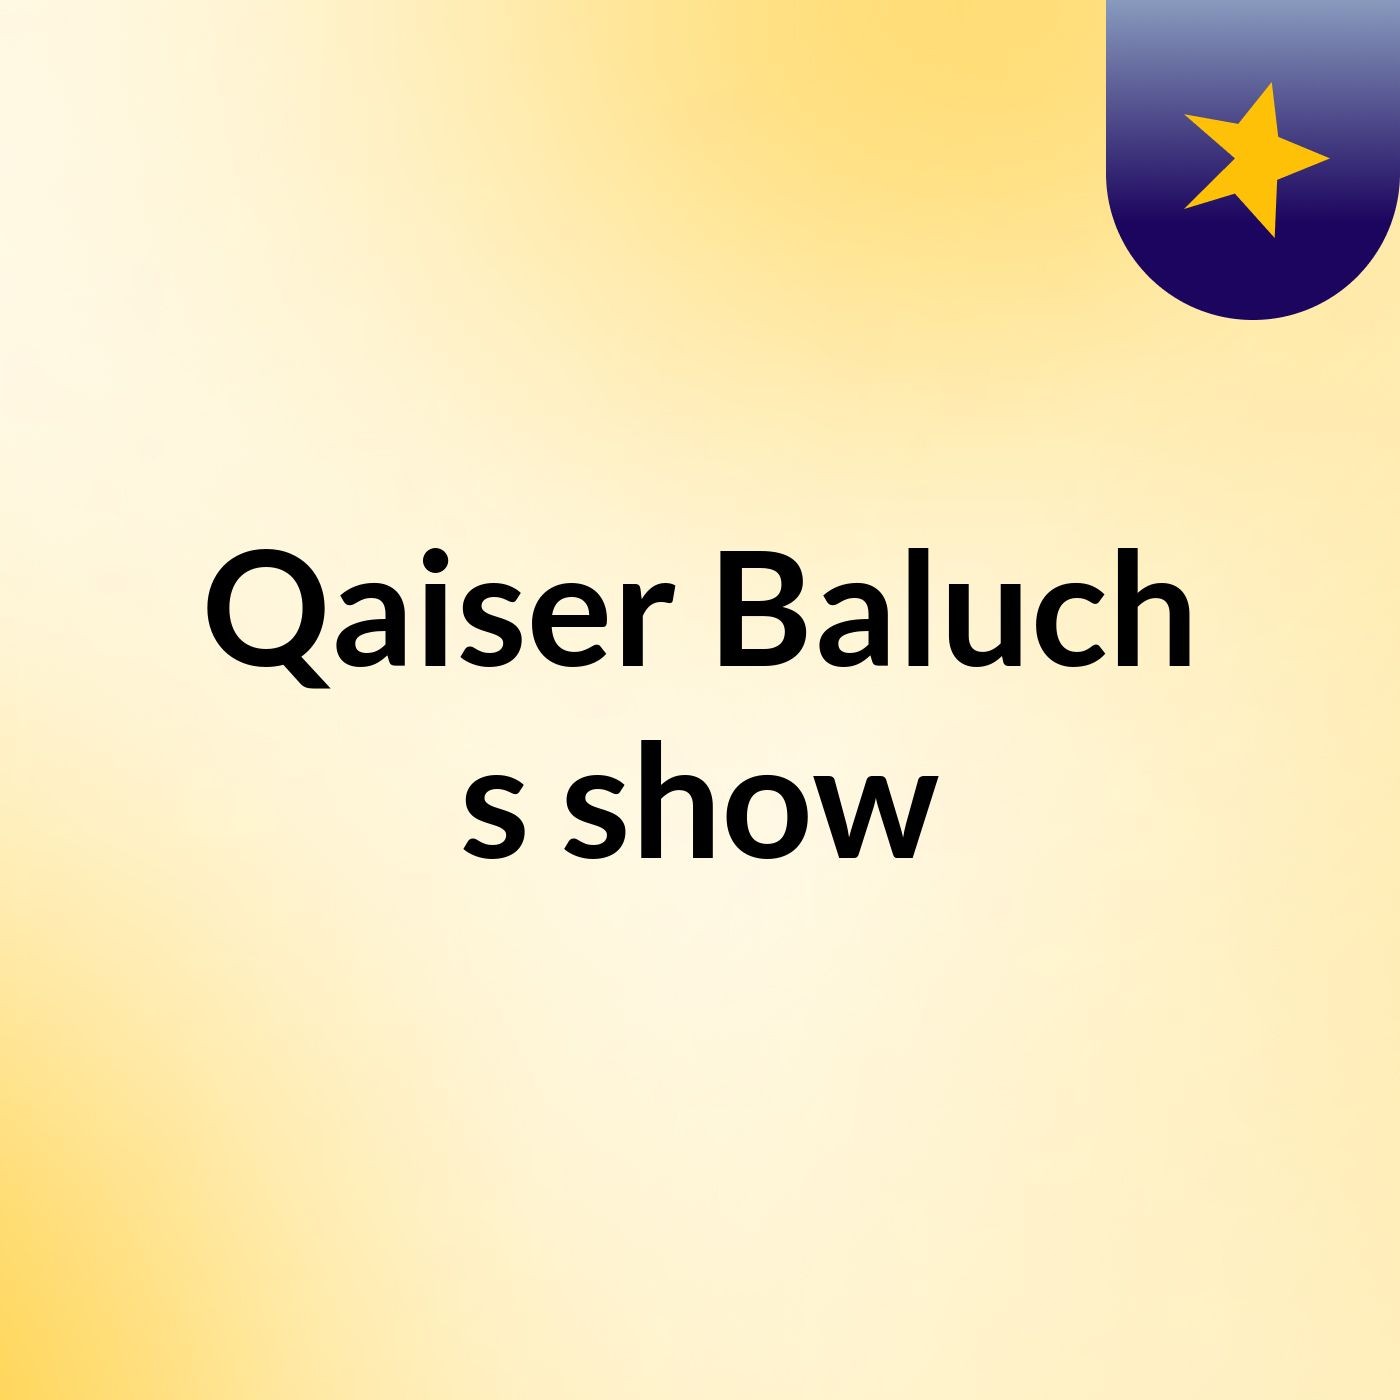 Qaiser Baluch's show